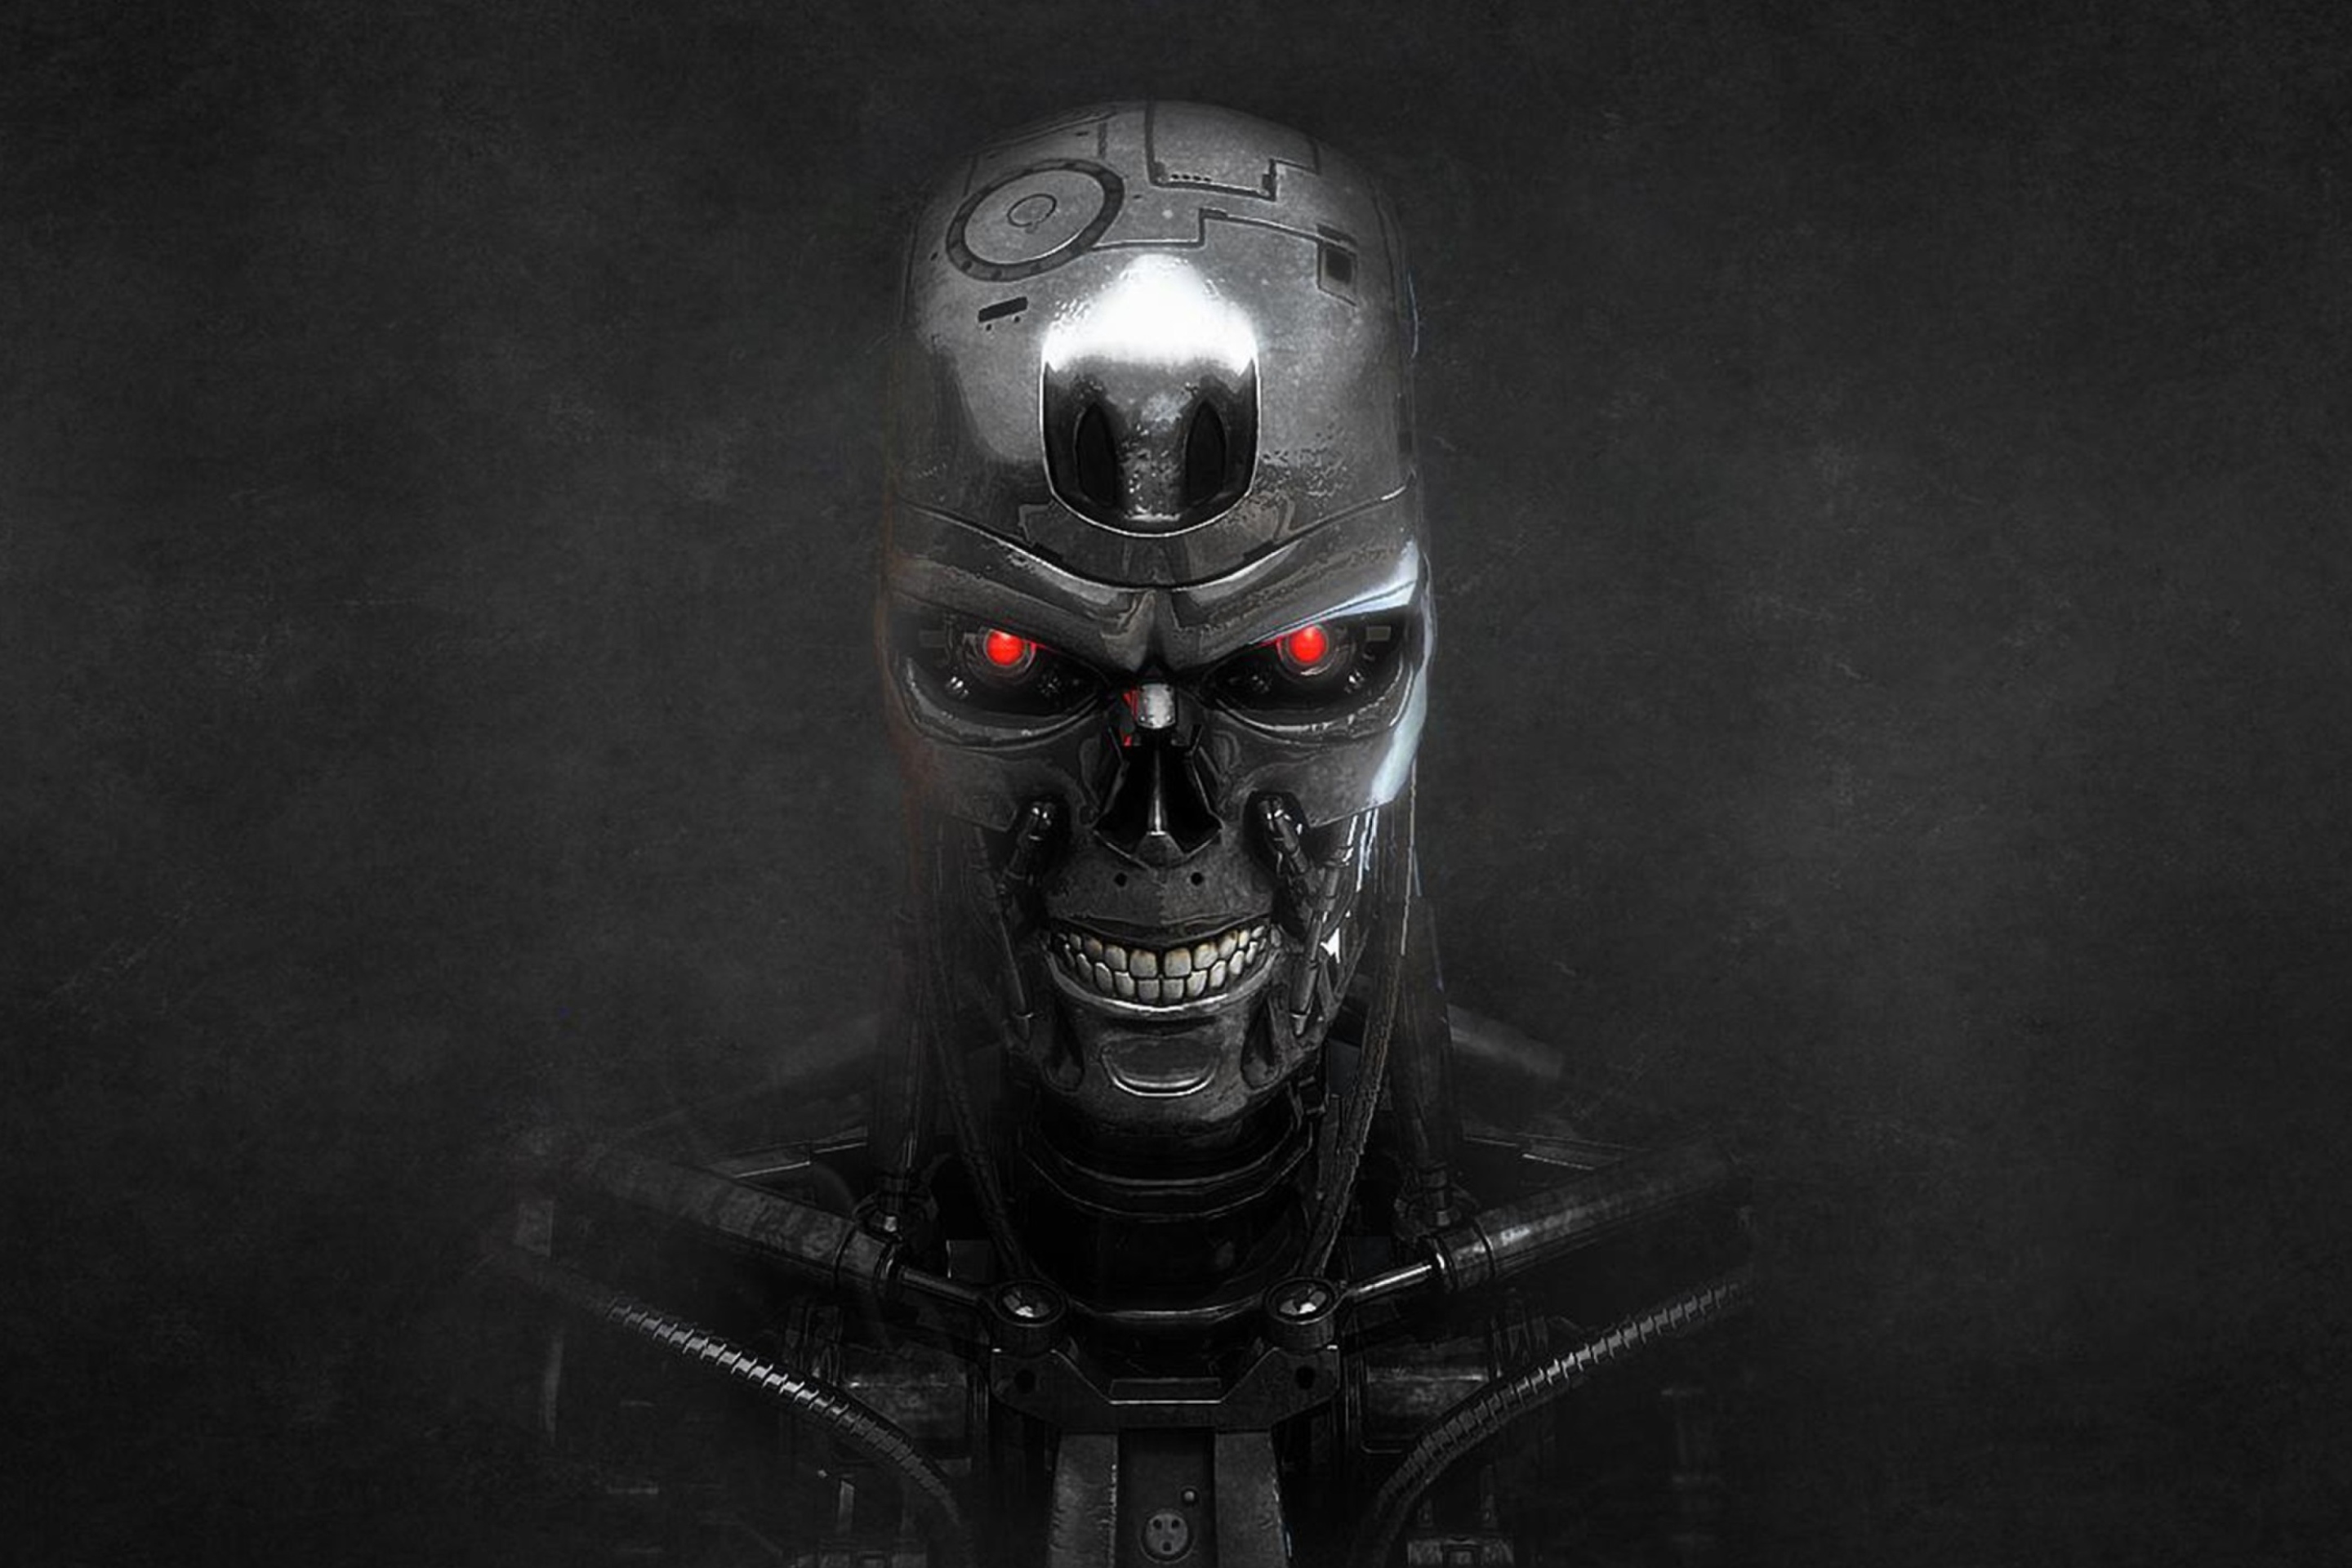 Sfondi Terminator Skeleton 2880x1920